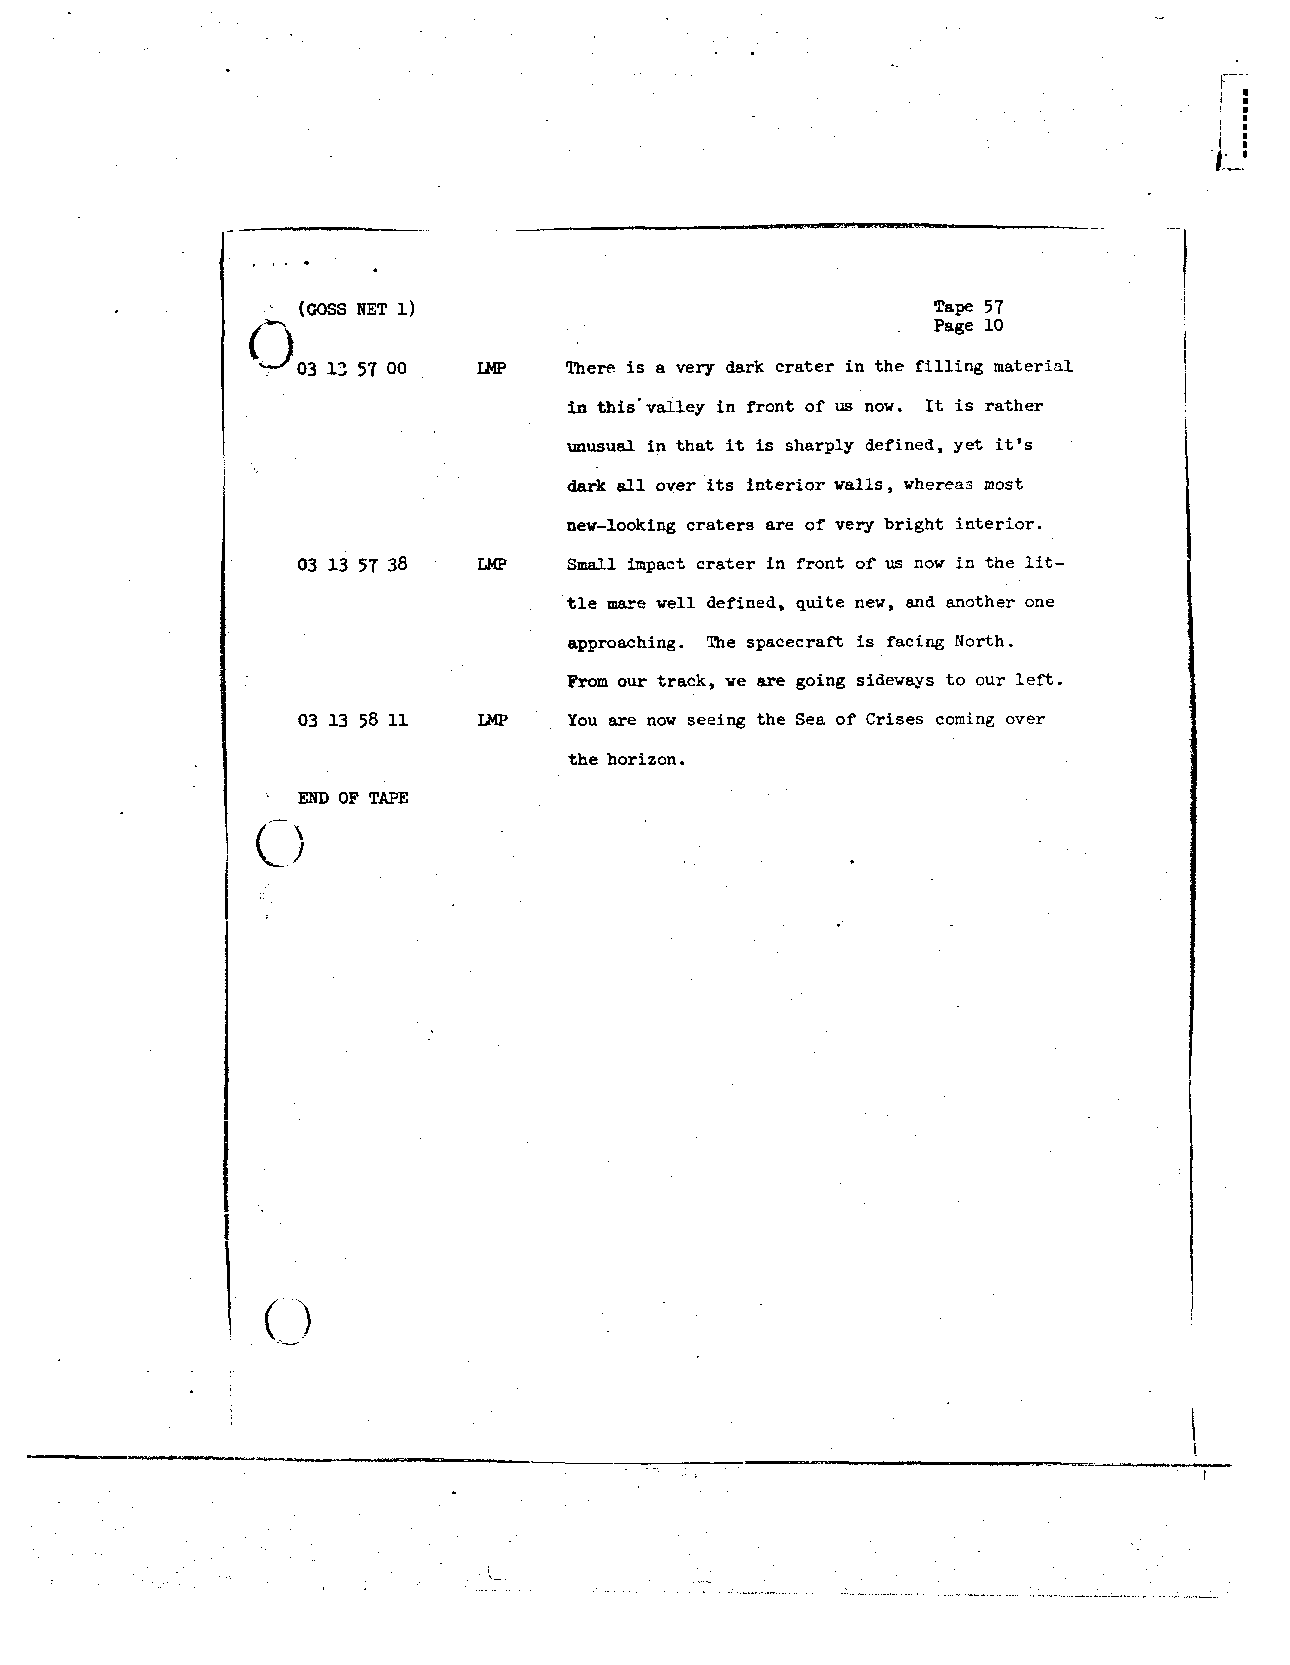 Page 459 of Apollo 8’s original transcript